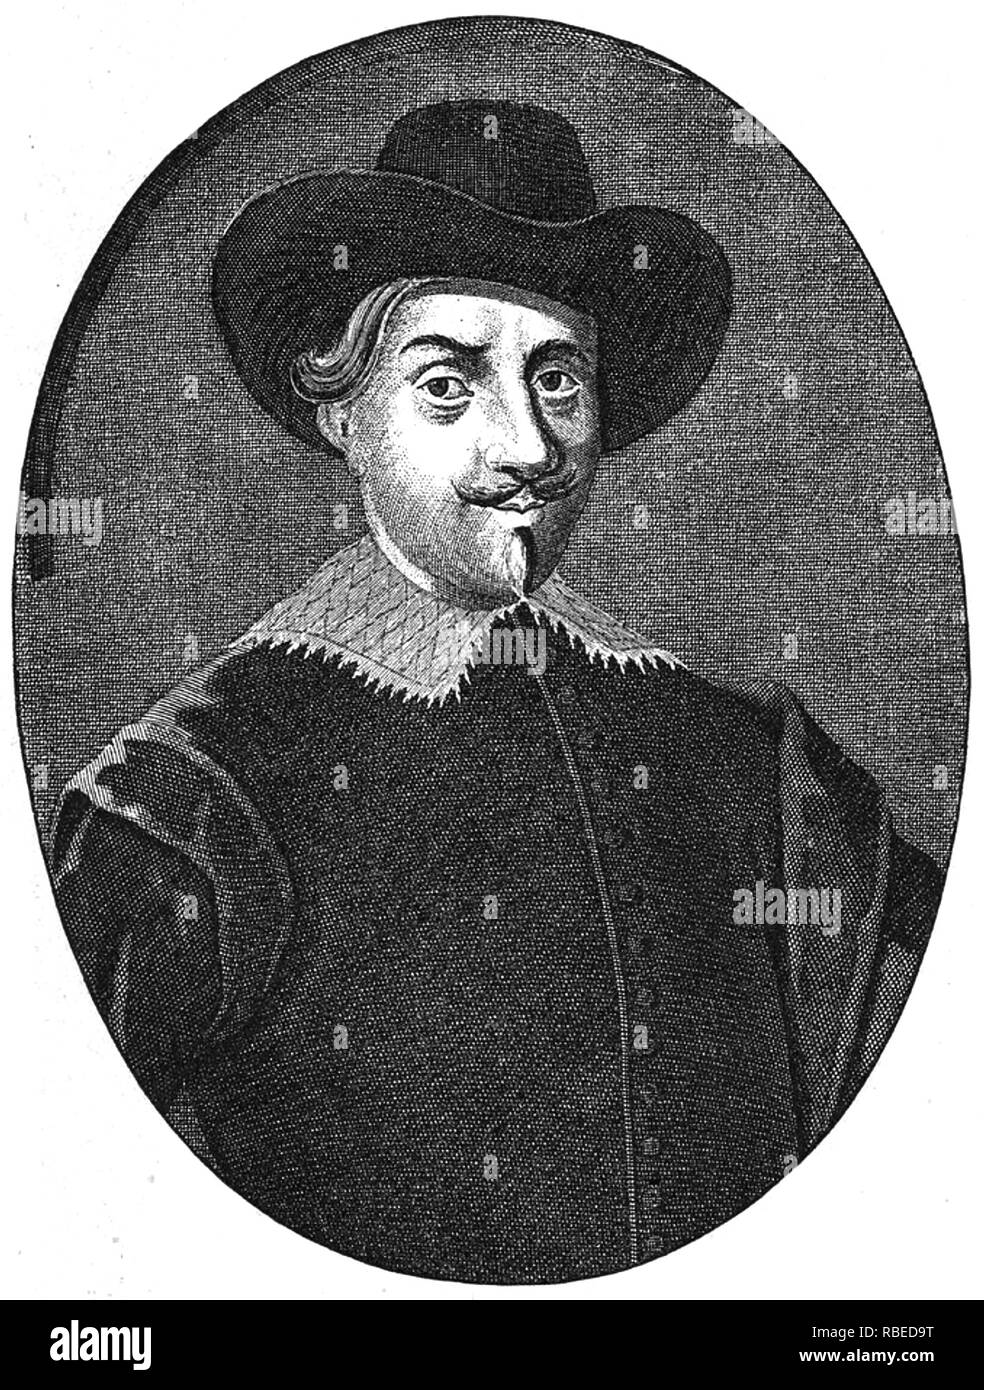 ANTON Van Diemen (1593-1645) Dutch colonial Gouverneur nach dem Tasmanien ursprünglich als Van Diemen's Land benannt Stockfoto